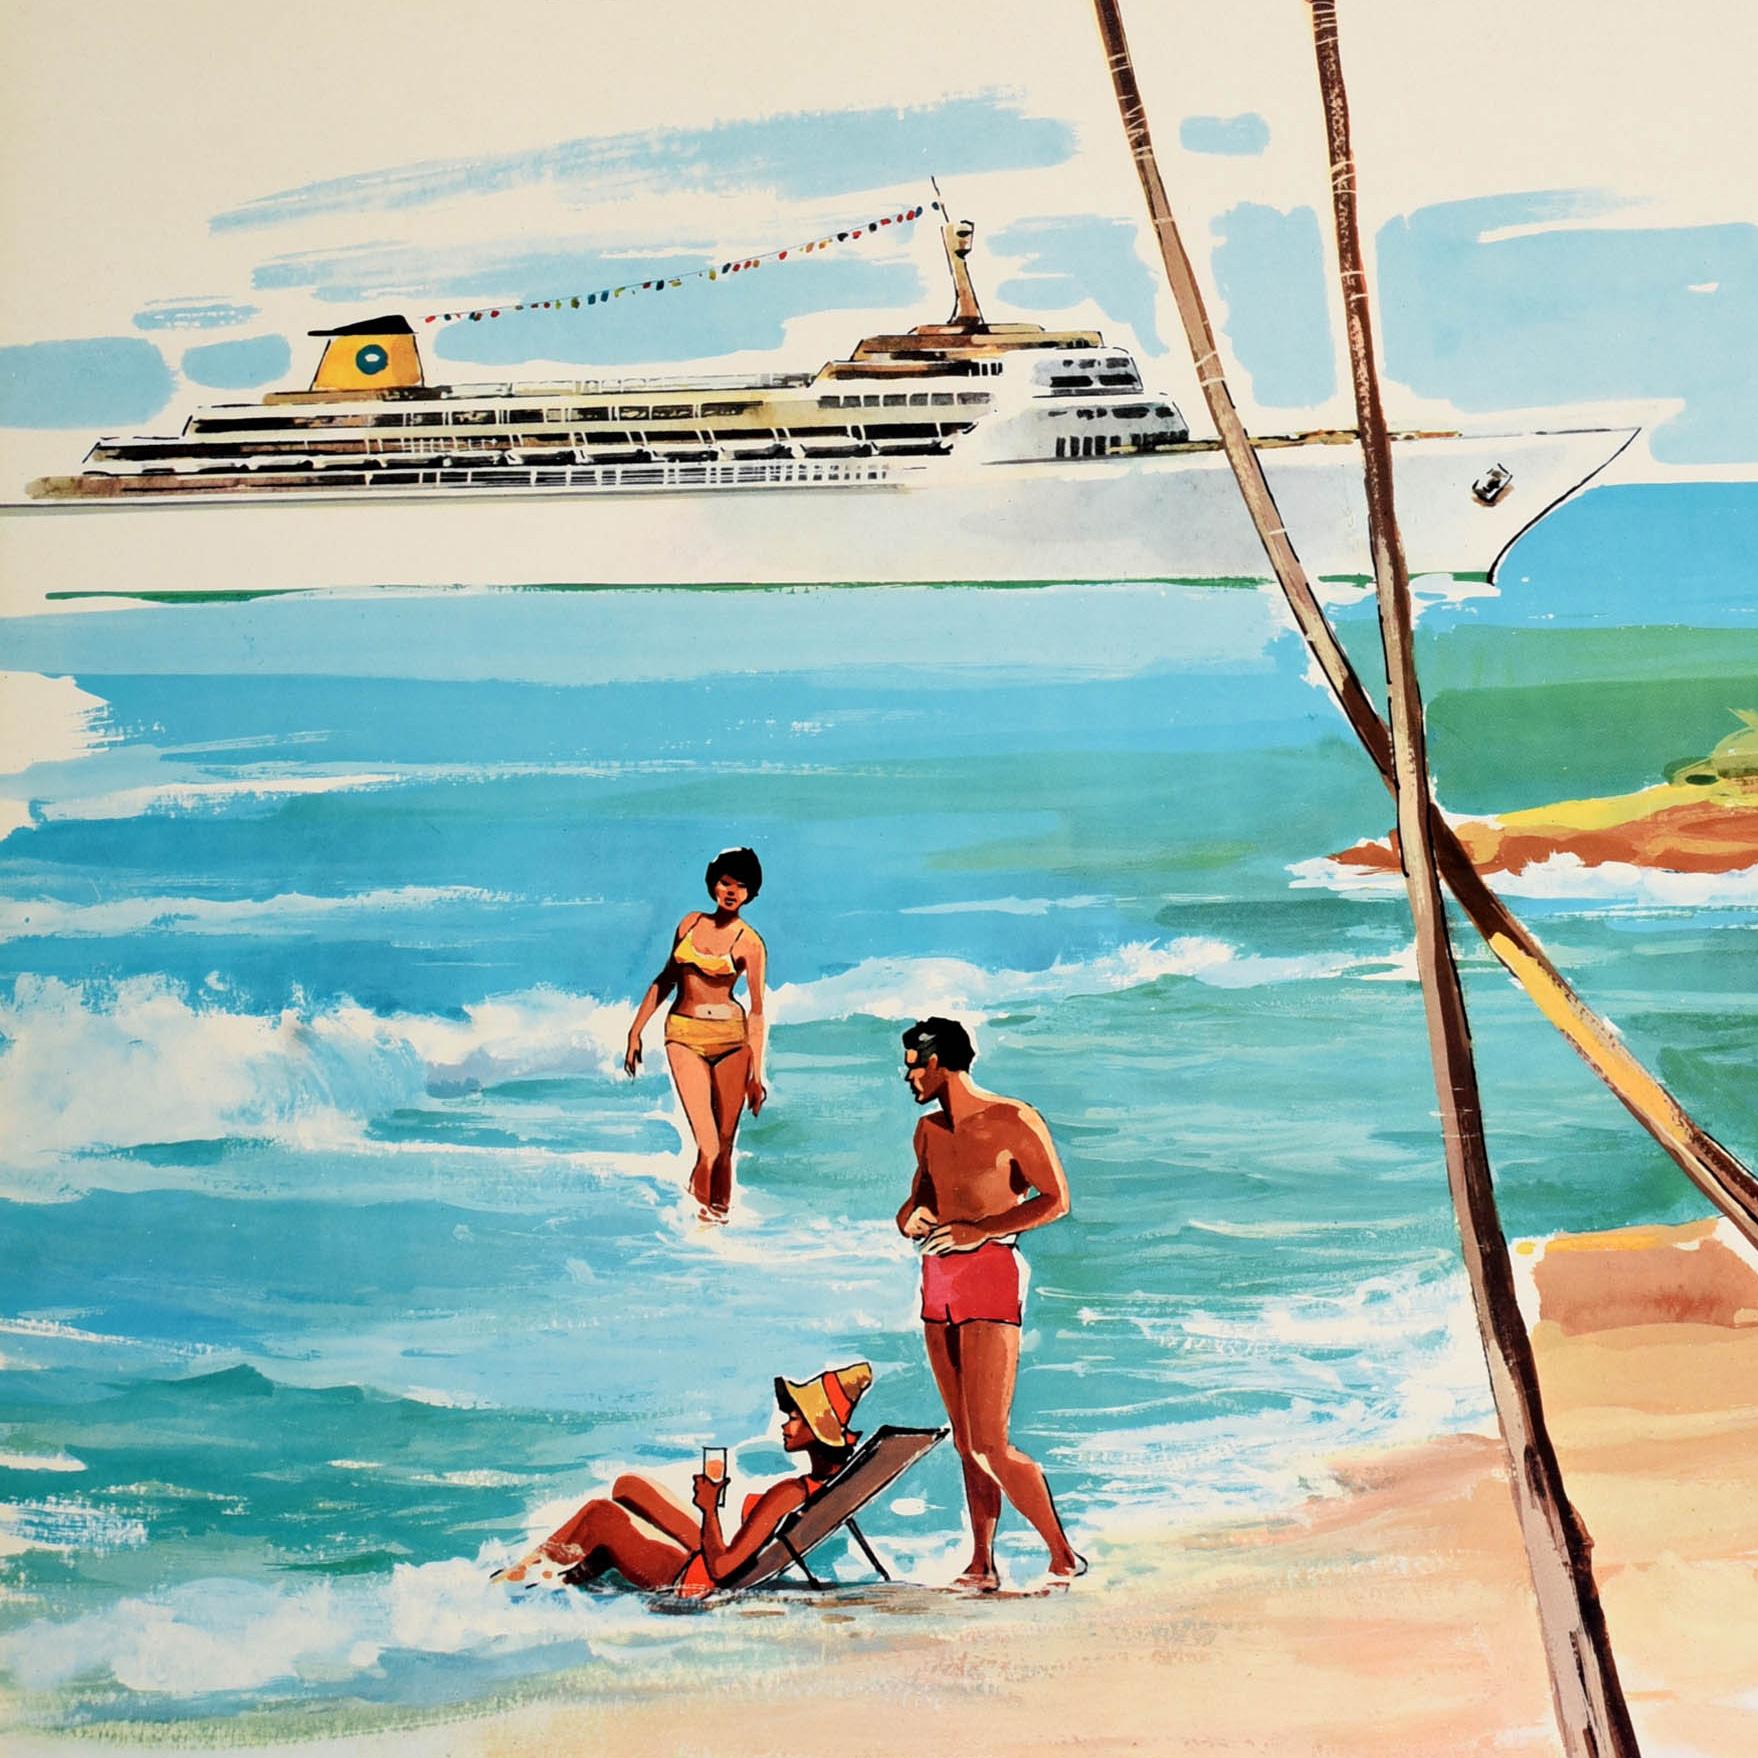 Original Vintage-Reiseplakat Ozeanische Kreuzfahrt Bermuda Bahamas Karibik Strand – Print von Unknown